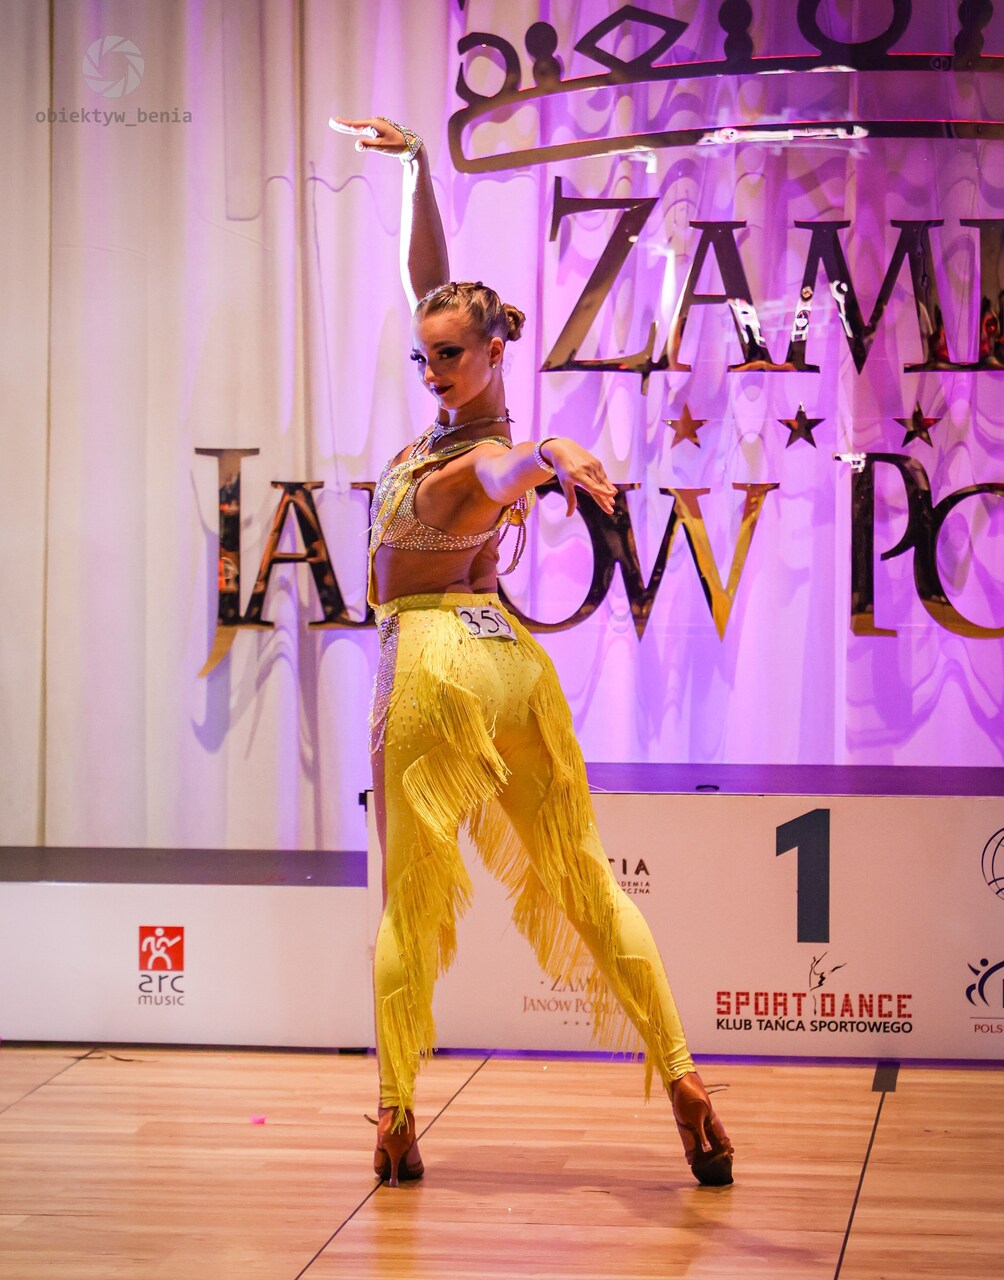 Tegoroczna mistrzyni Polski Anna Szwedo (kat. salsa solo junior 2) ma na swoim koncie sporo mistrzowskich tytułów. Zdj. Obiektyw Benia